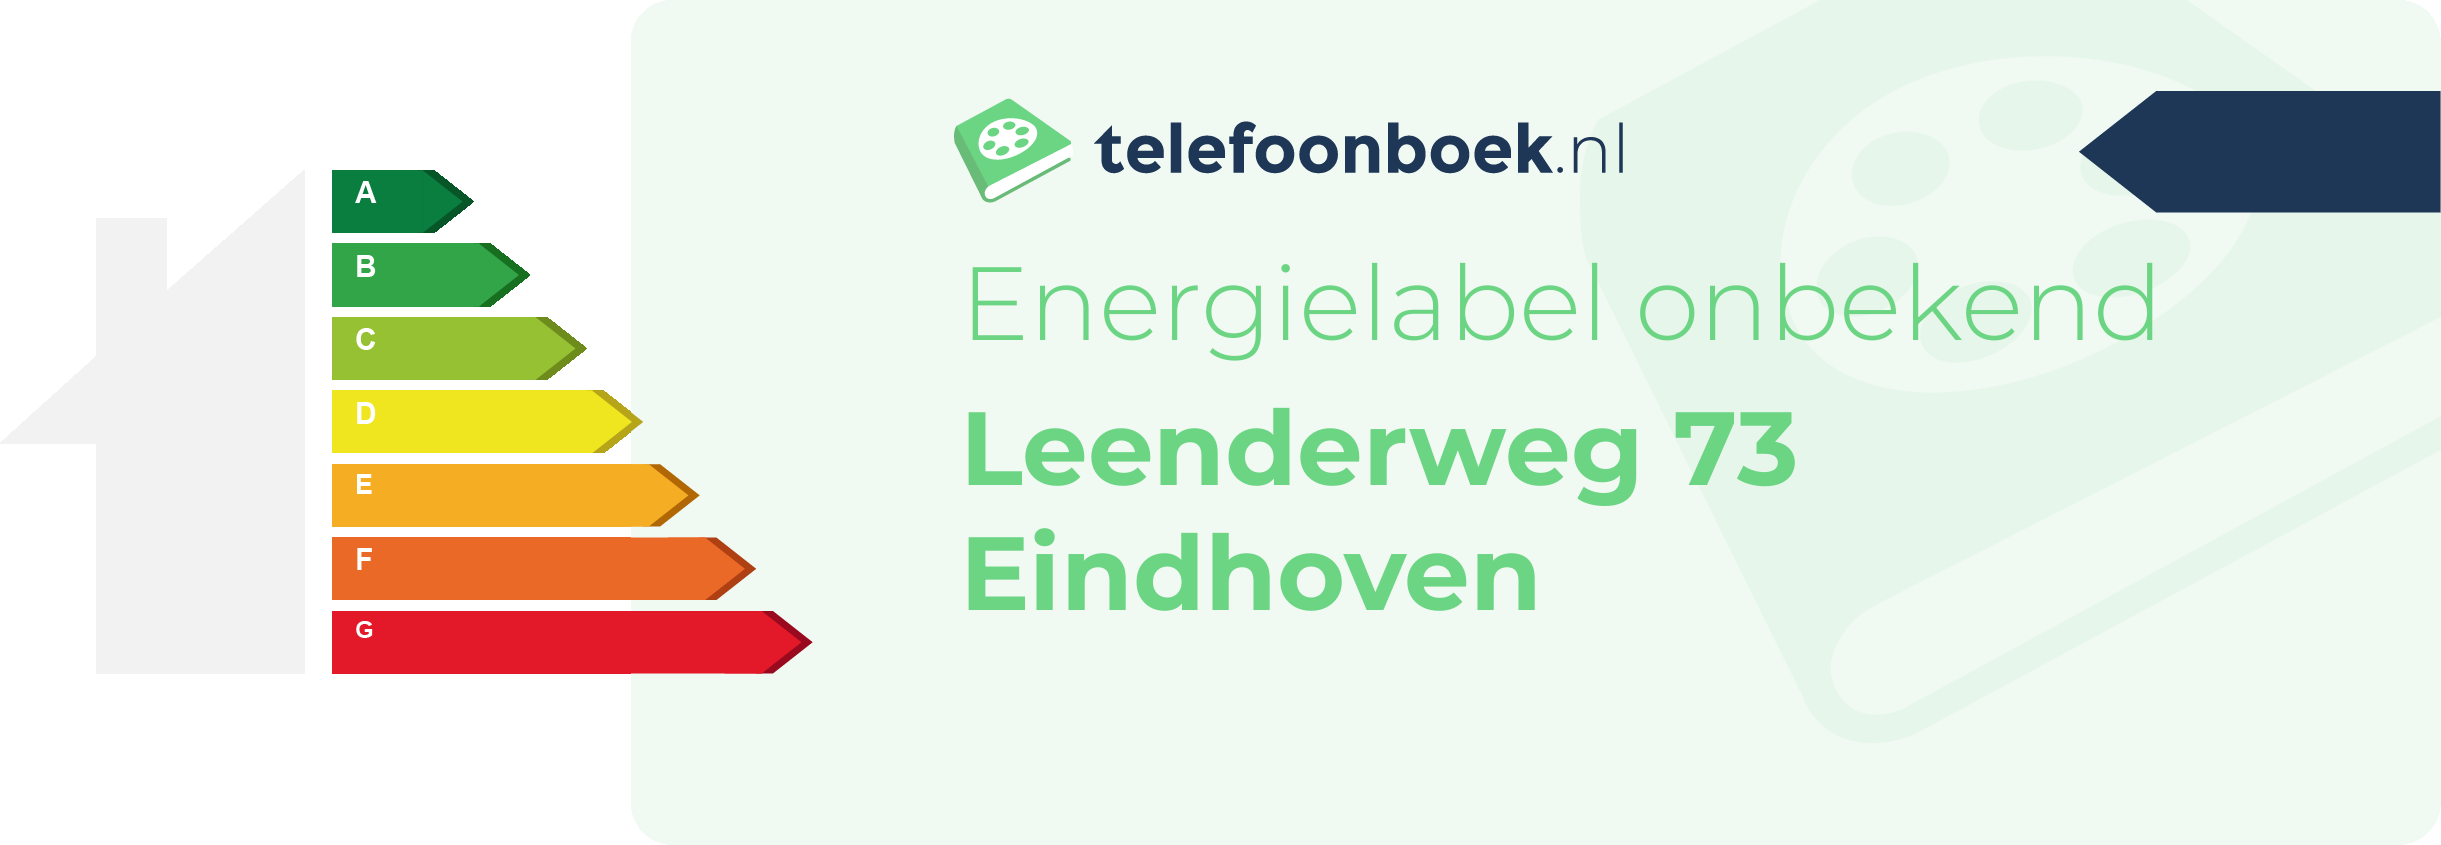 Energielabel Leenderweg 73 Eindhoven